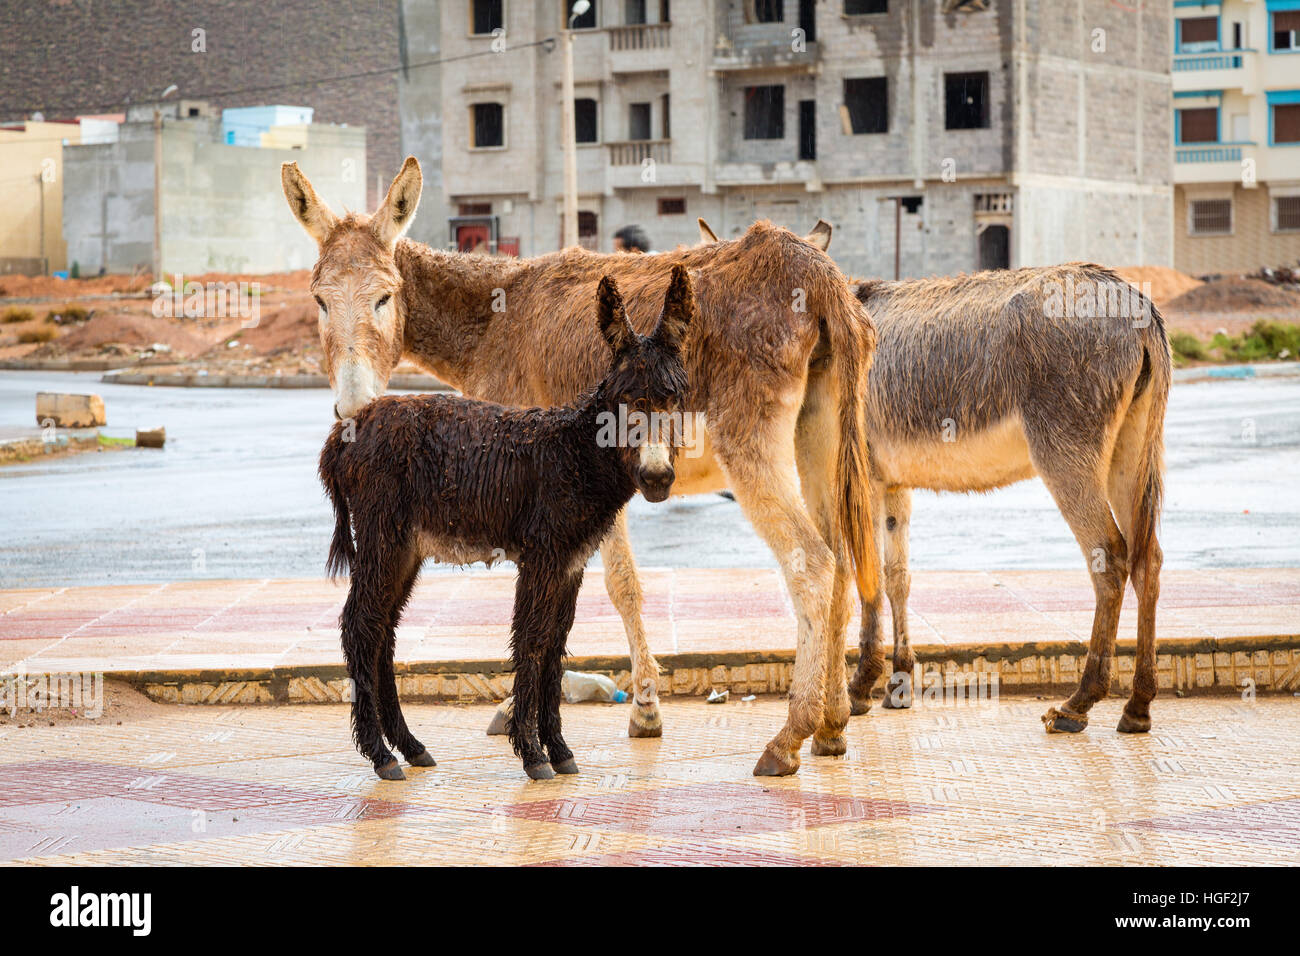 Burro en Marruecos es el más común de animales de trabajo. Foto de stock